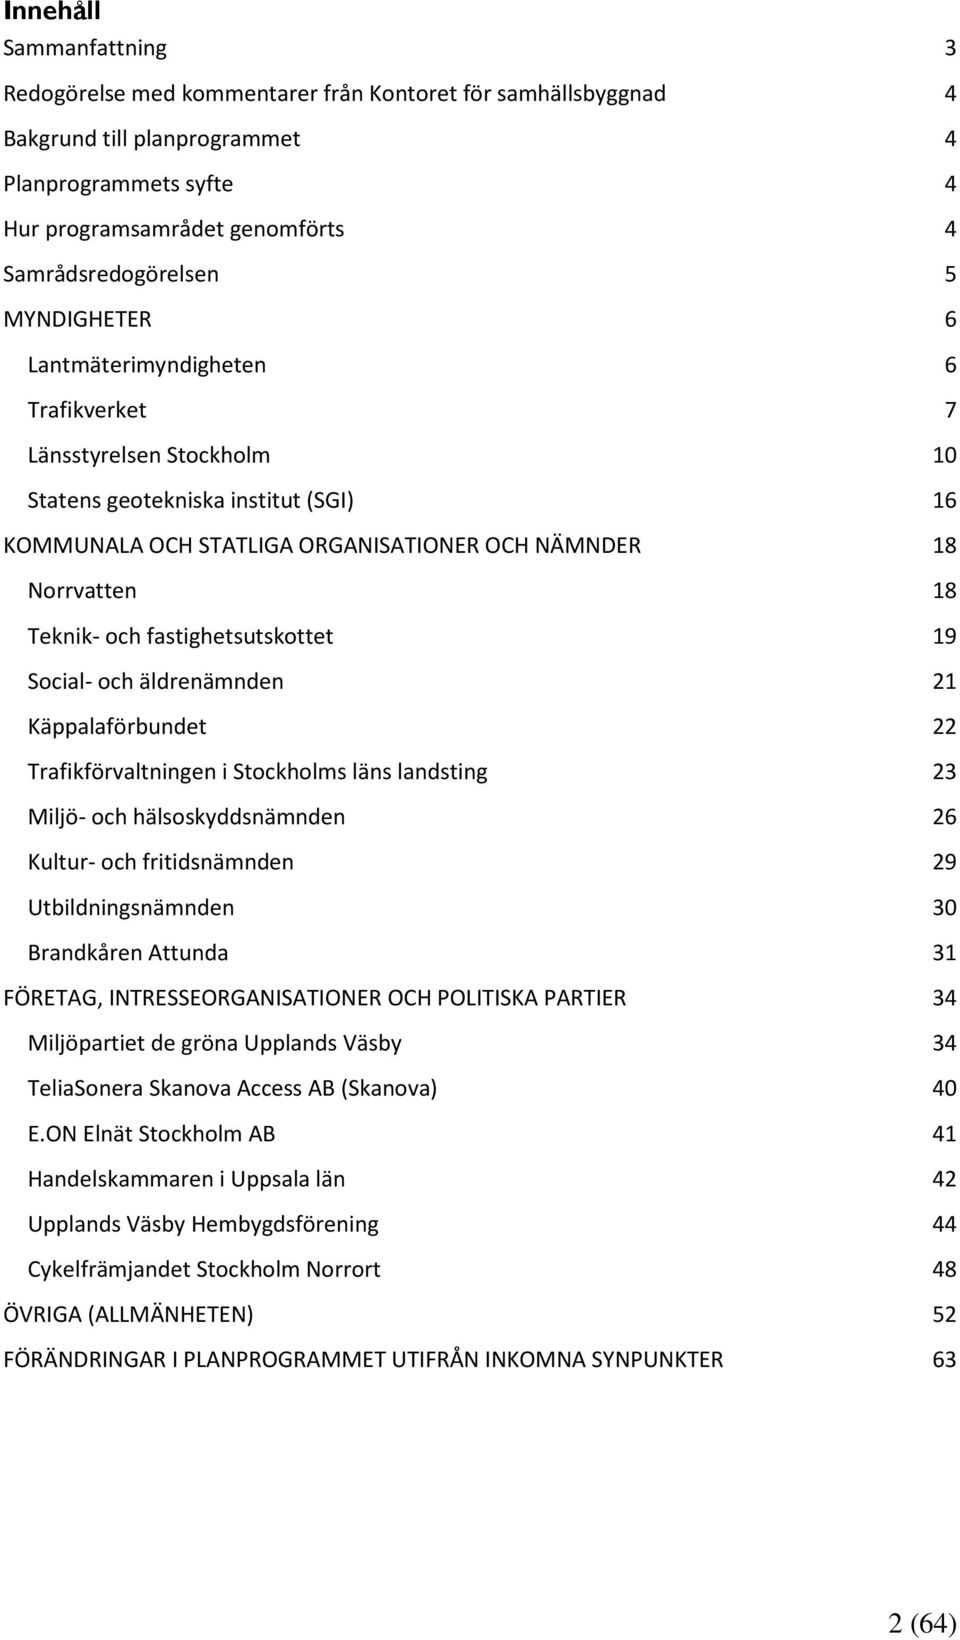 fastighetsutskottet 19 Social- och äldrenämnden 21 Käppalaförbundet 22 Trafikförvaltningen i Stockholms läns landsting 23 Miljö- och hälsoskyddsnämnden 26 Kultur- och fritidsnämnden 29